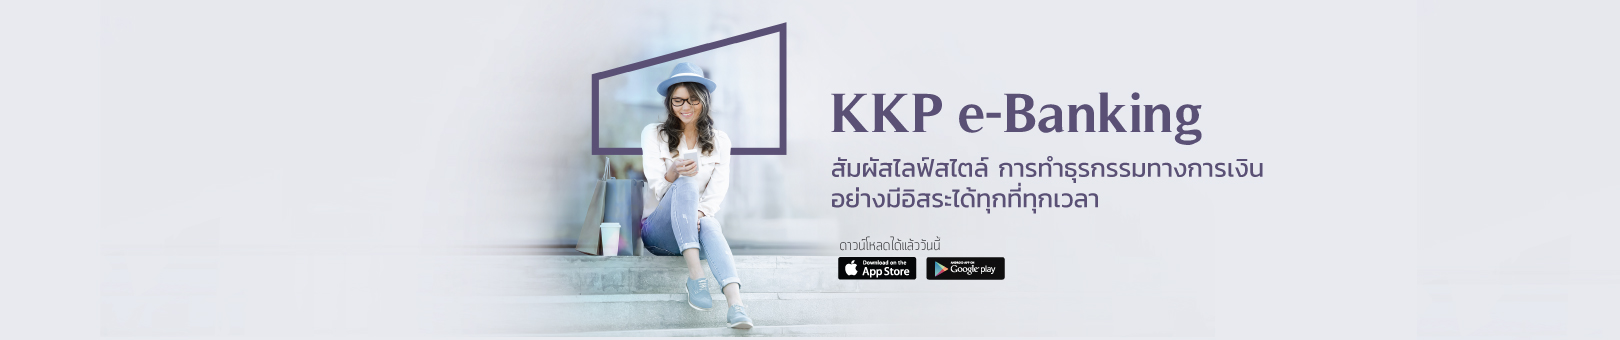 KKP-E-banking_1620x340